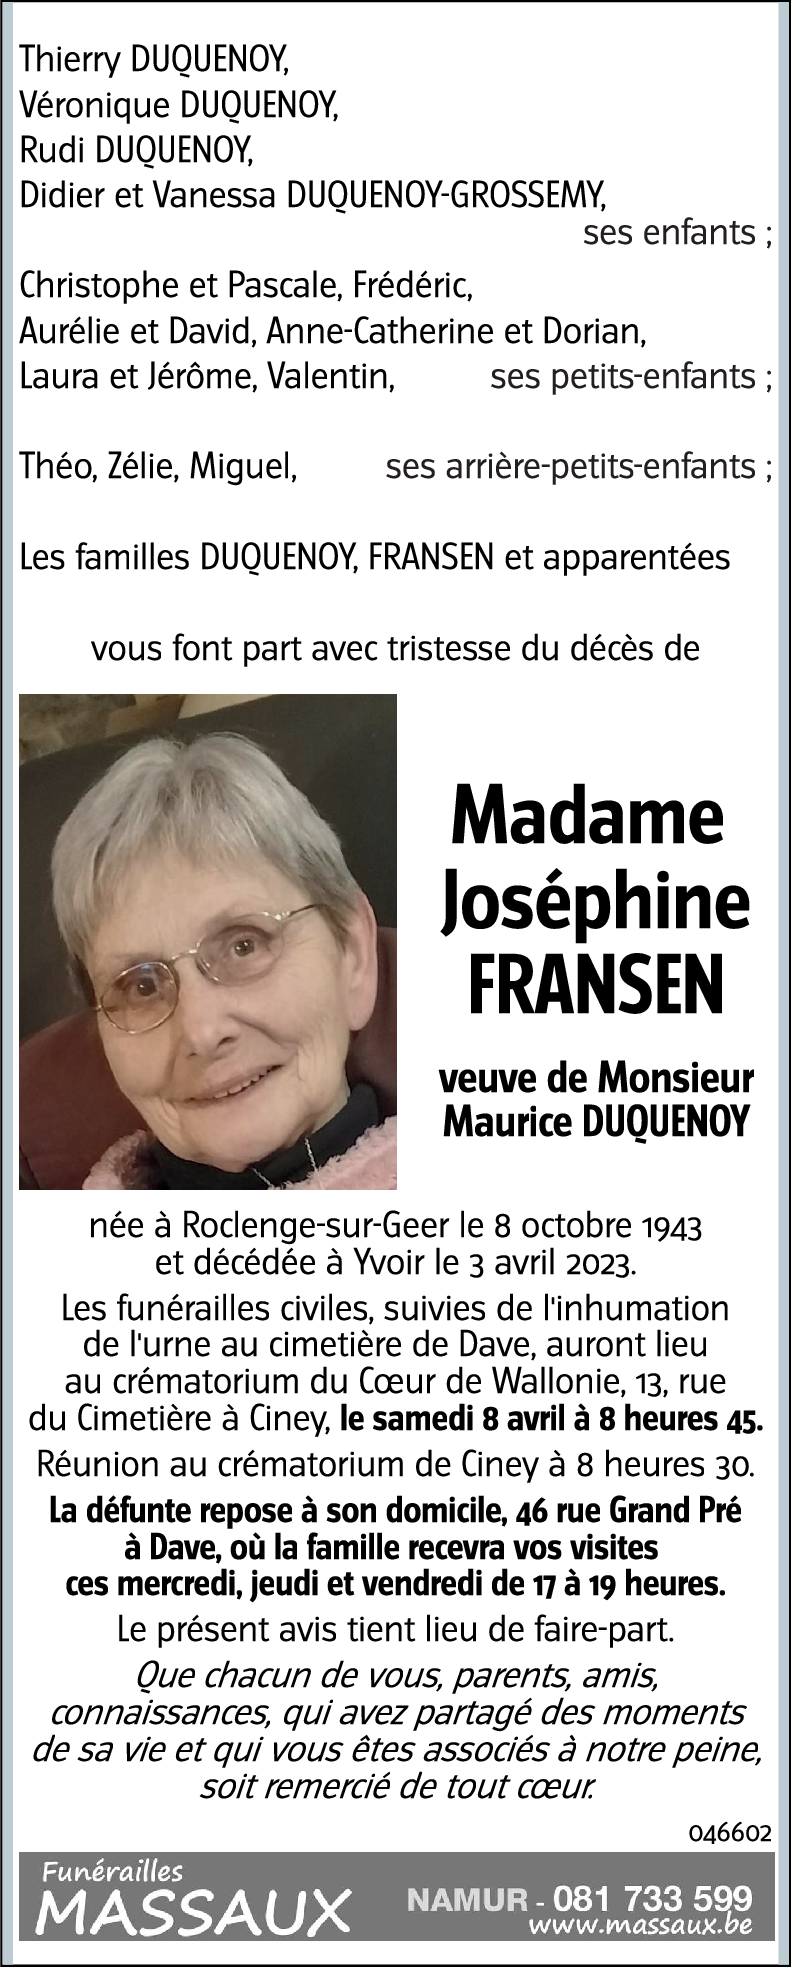 Joséphine FRANSEN